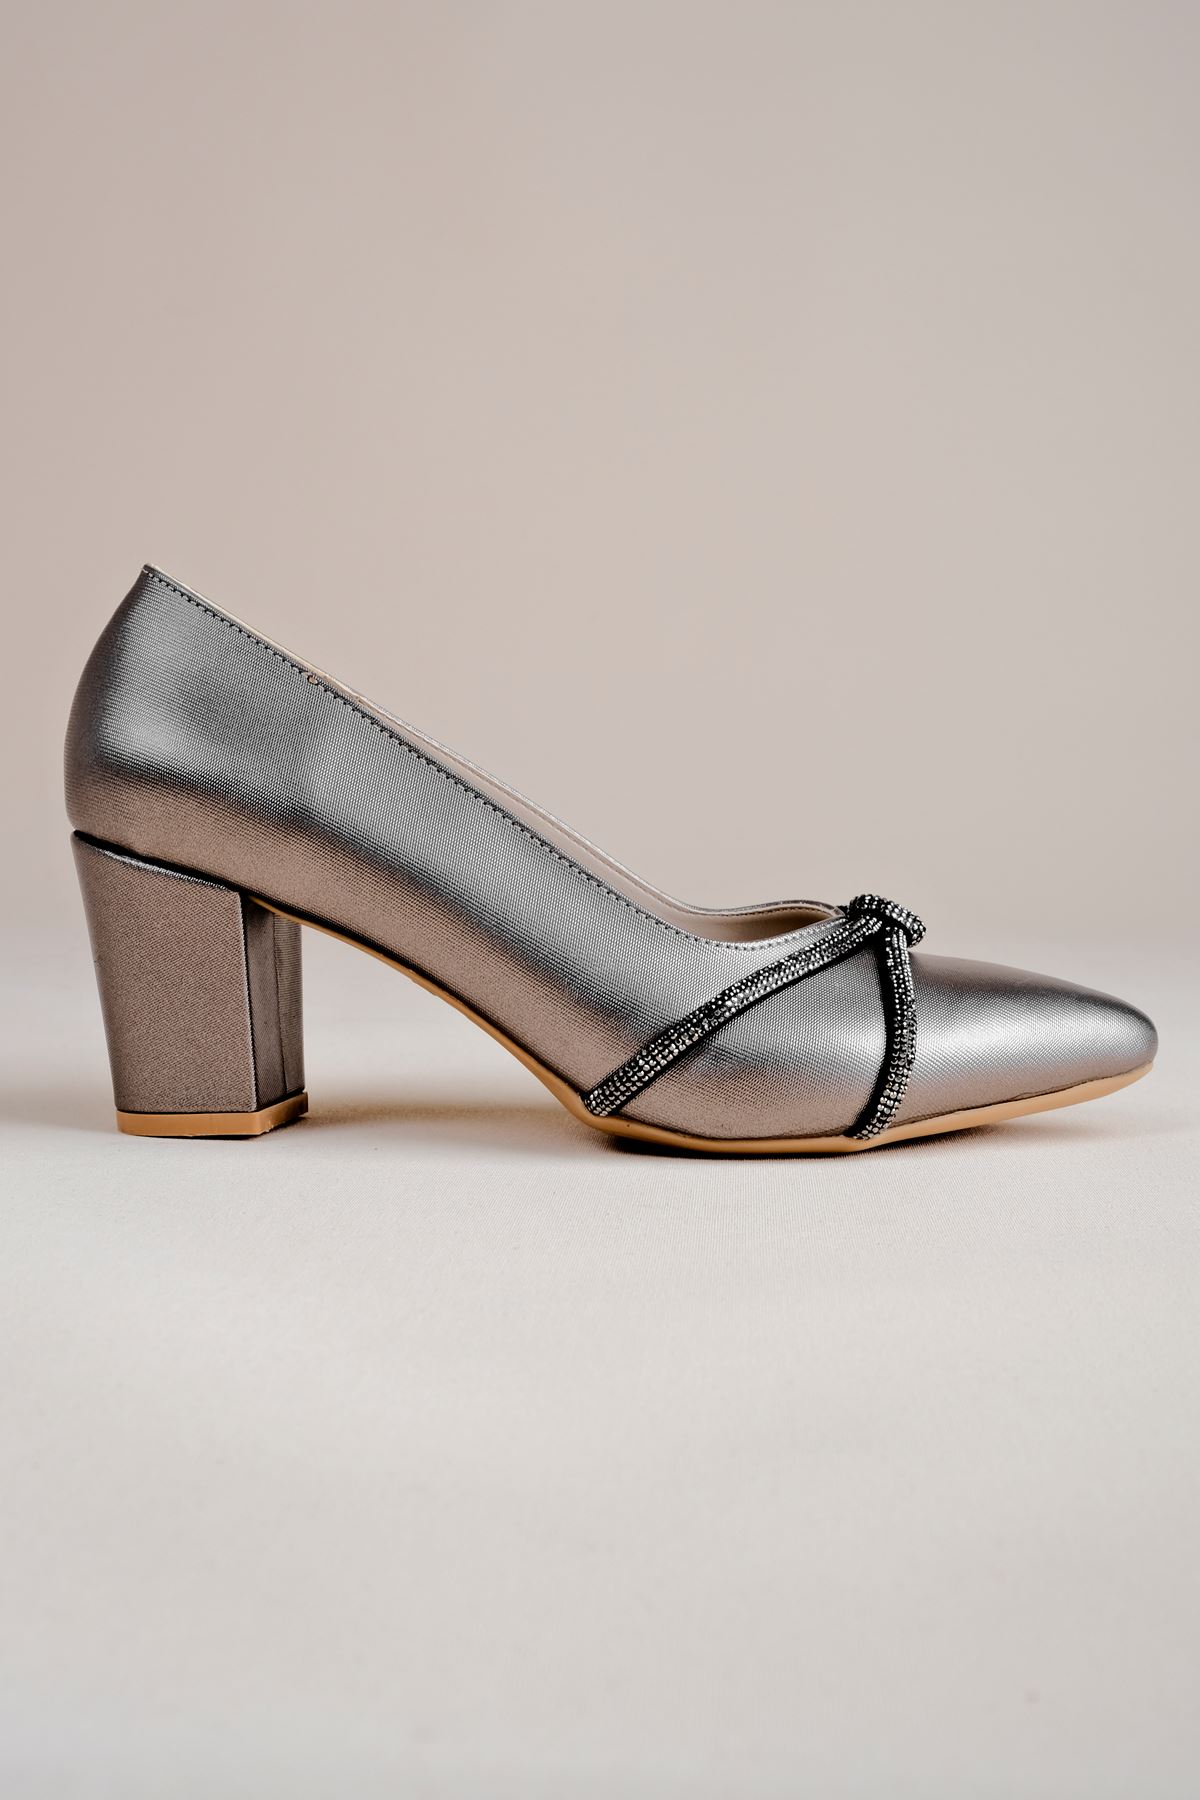 Sebari Kadın Topuklu Ayakkabı Taş detaylı-Gri